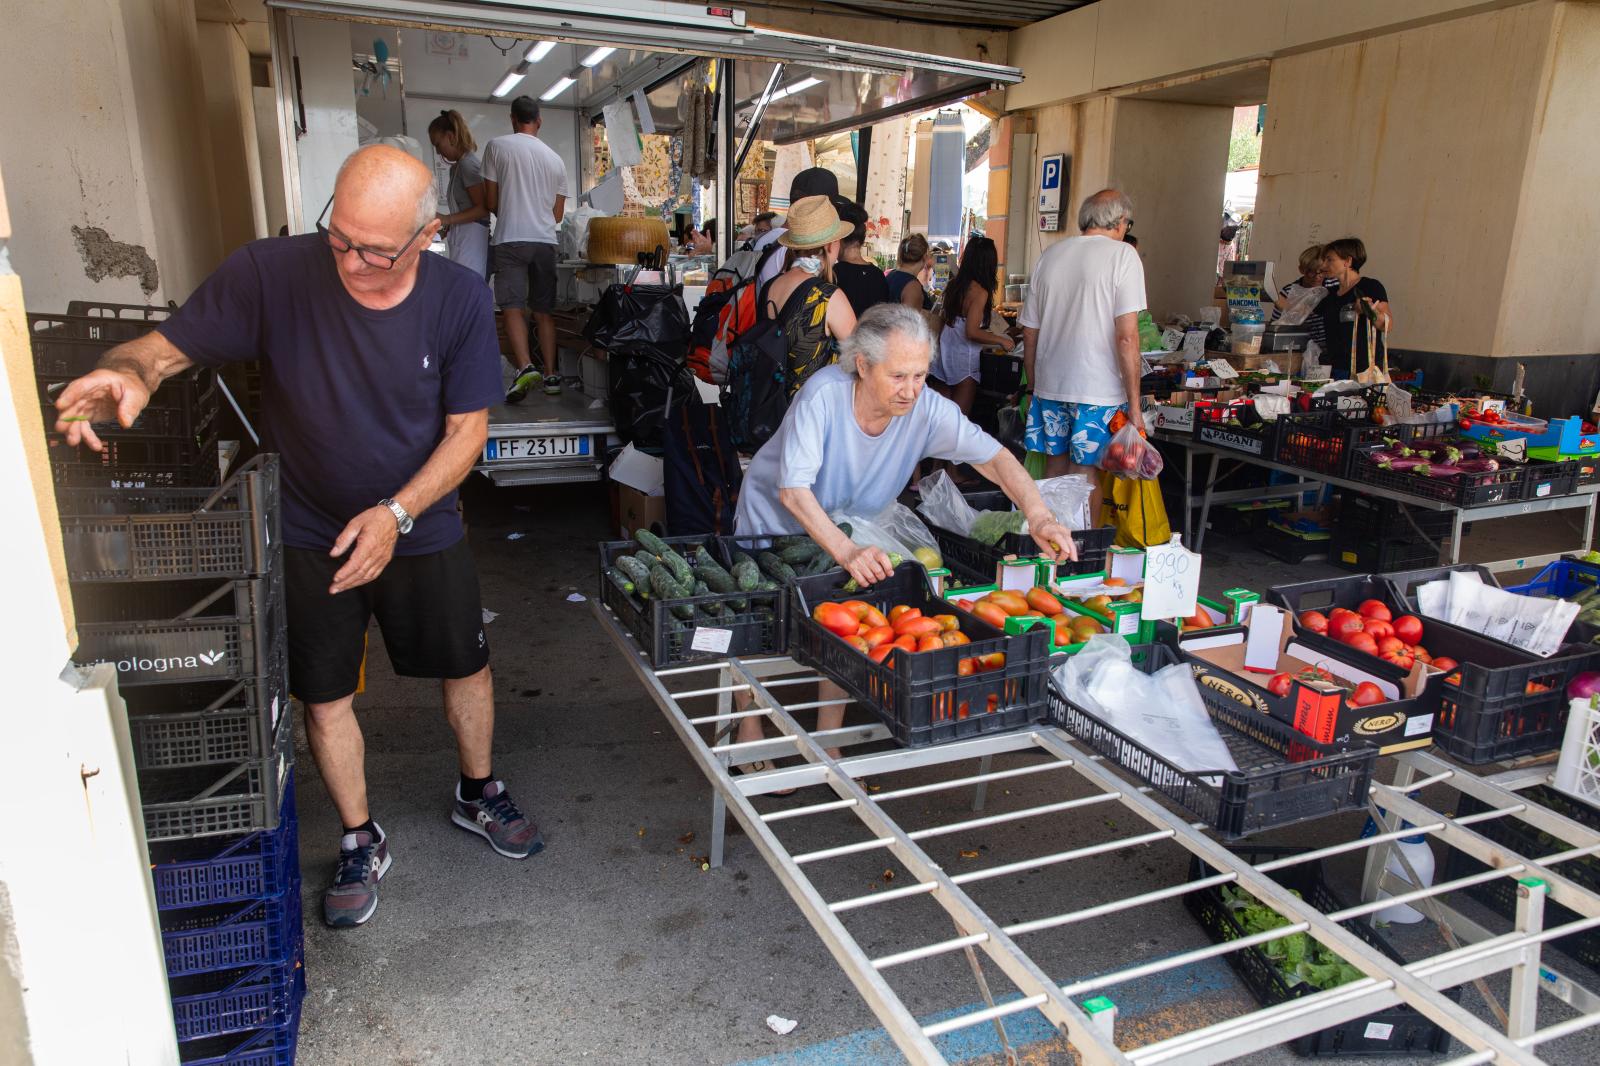 Food Market in Cinque Terre | Buy this image